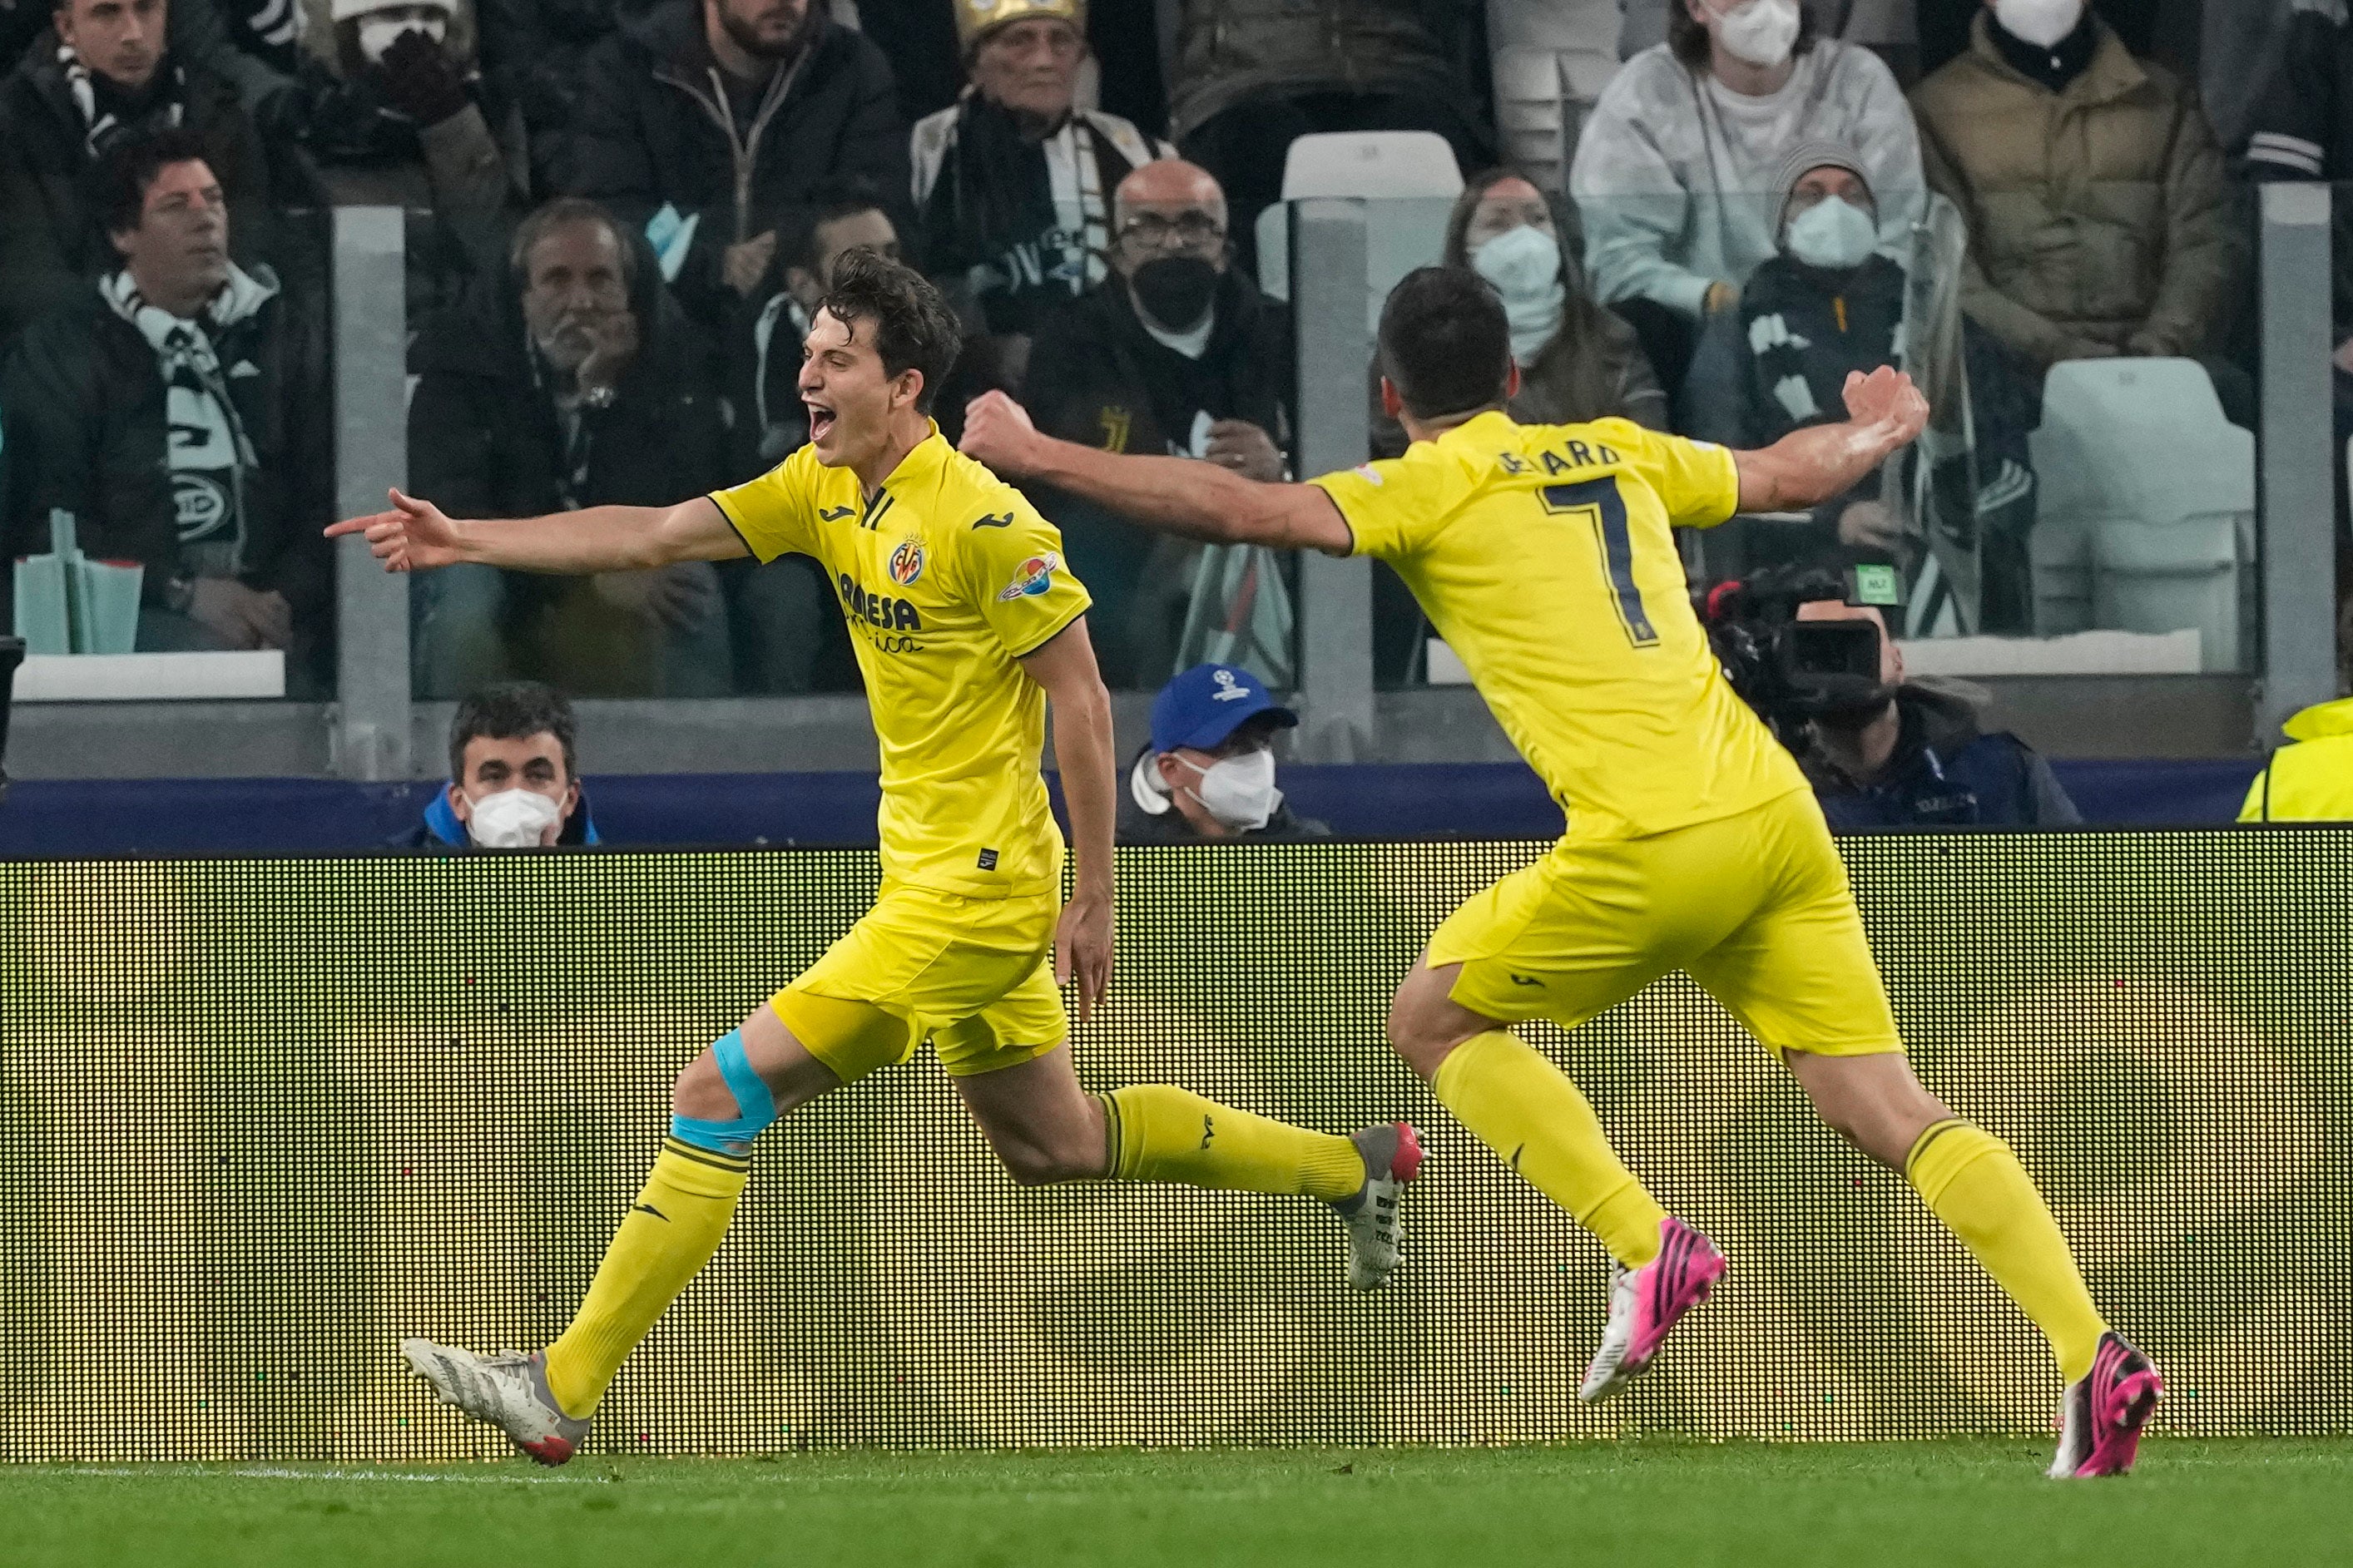 Pau Torres, left, celebrates scoring Villarreal’s second goal in their 3-0 win at Juventus (Antonio Calanni/AP)